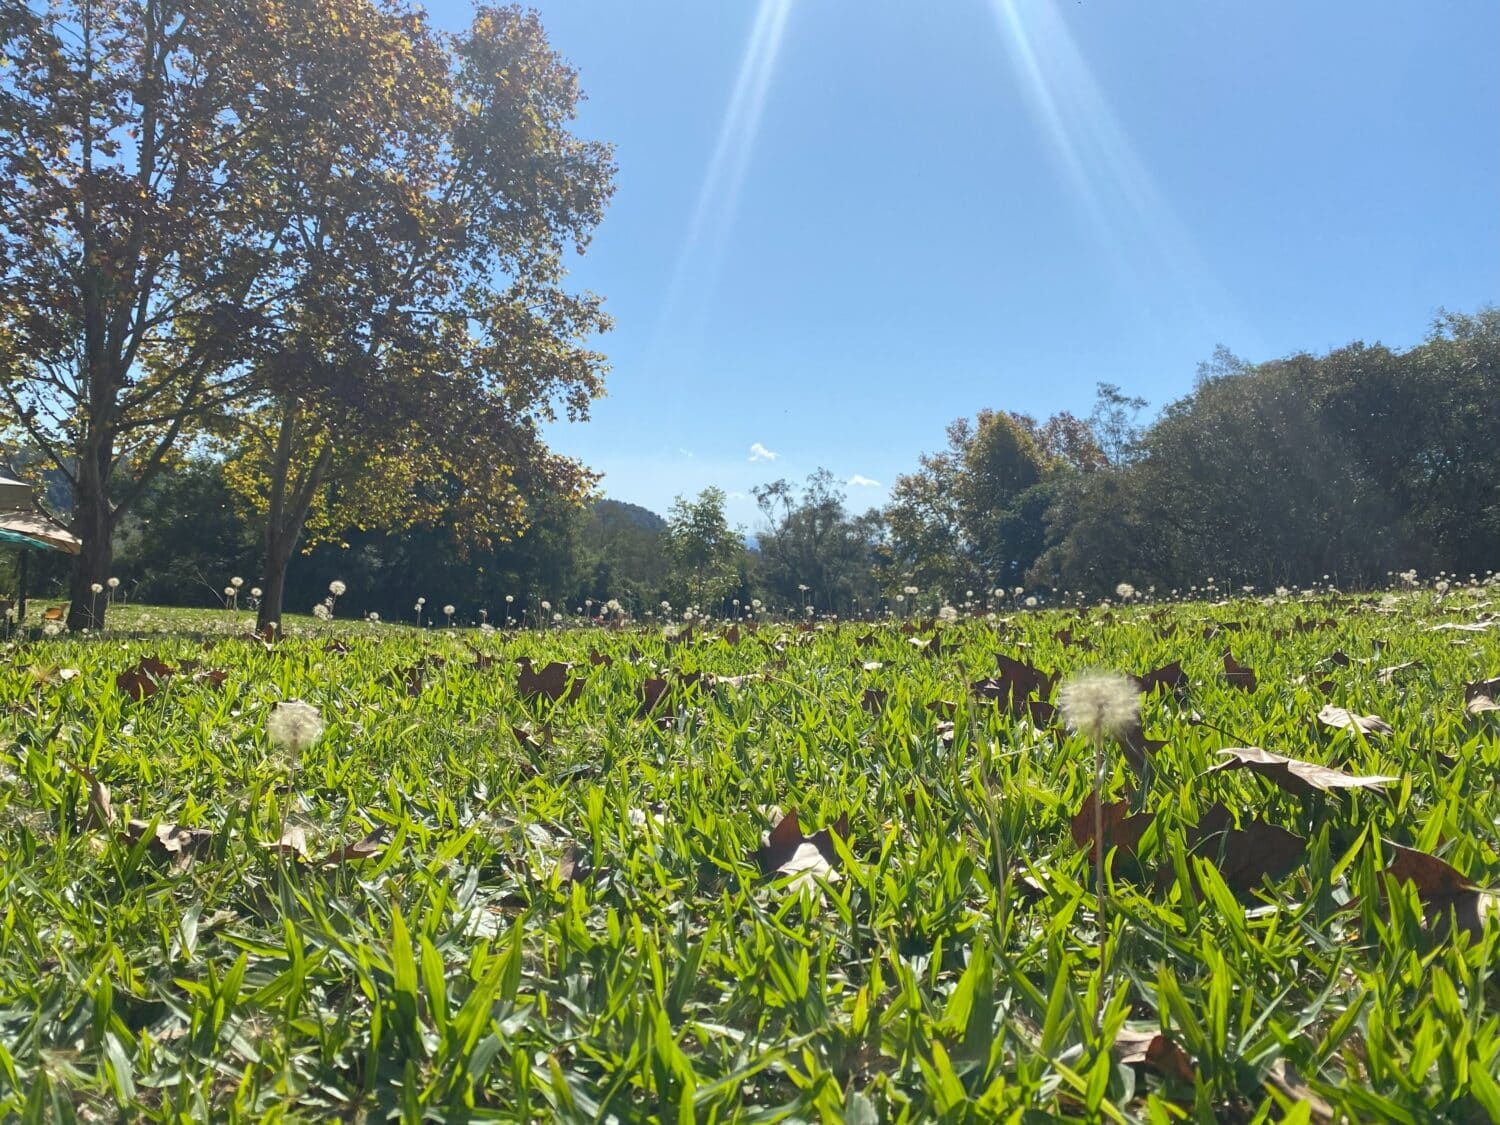 Jardim com gramado verdinho e diversos dentes-de-leão espalhados, num dia de céu claro, e há árvores com folhas outonais ao fundo